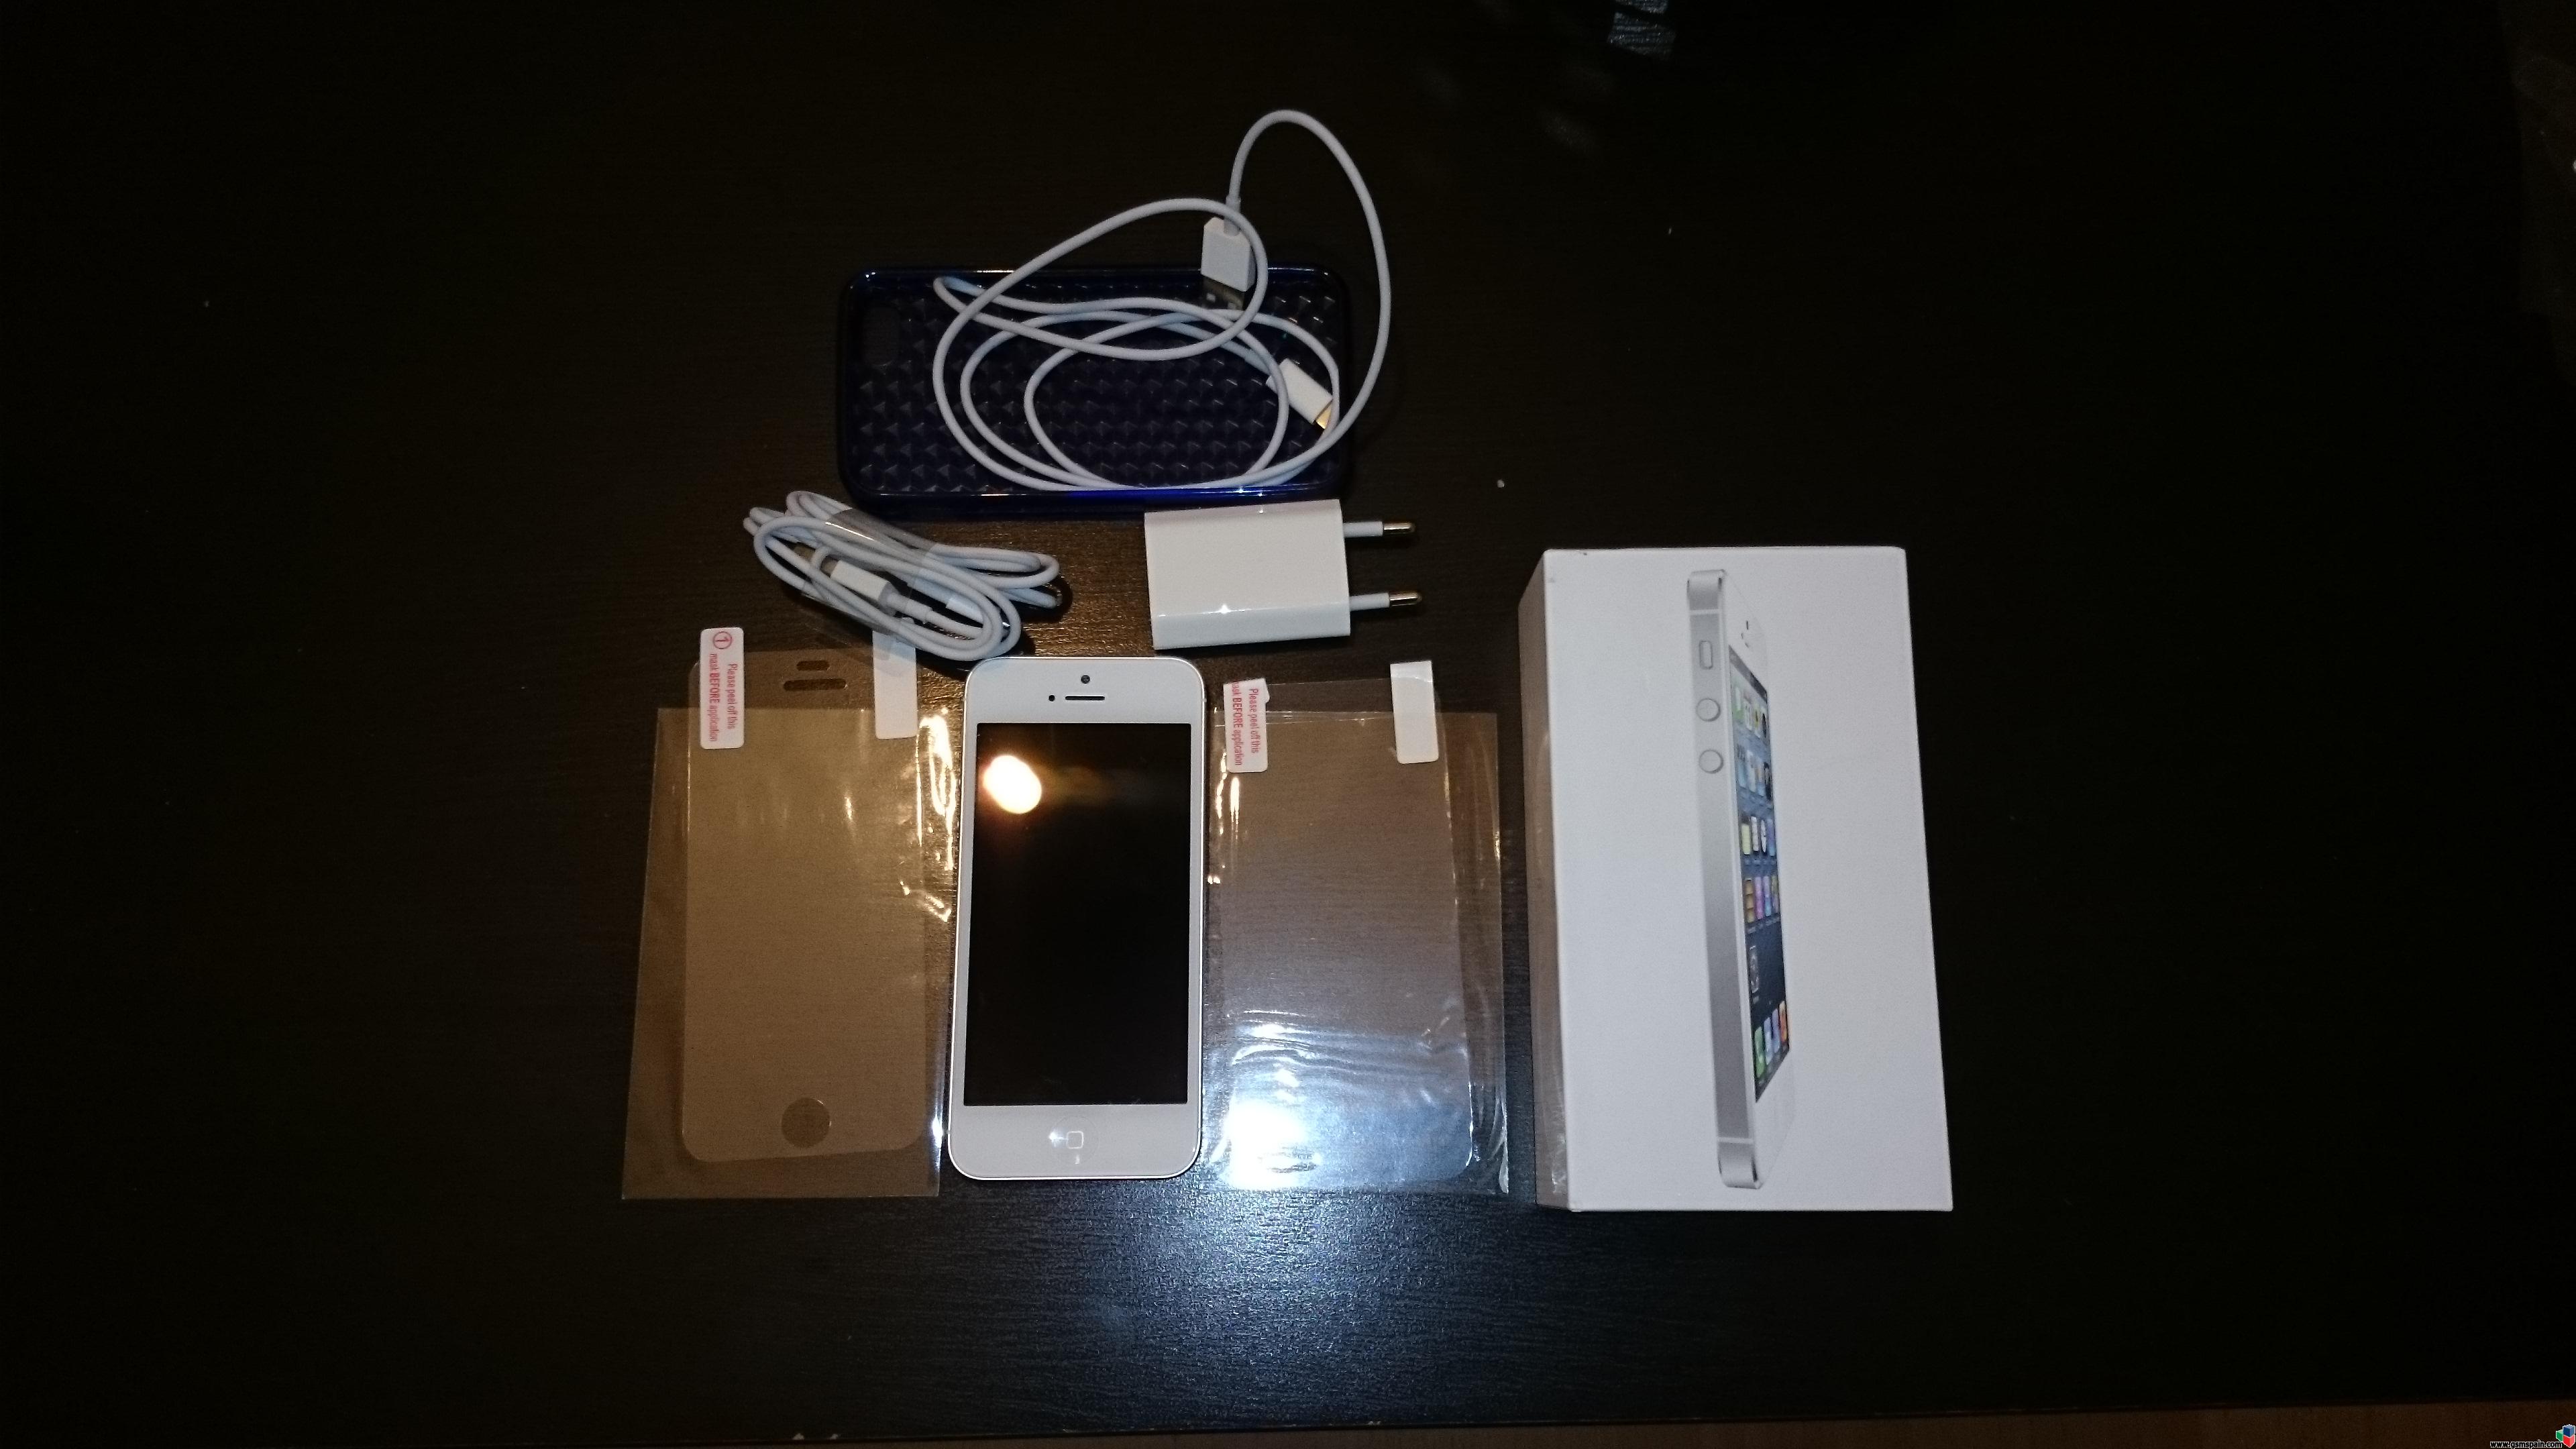 [VENDO] iPhone 5 16gb blanco orange